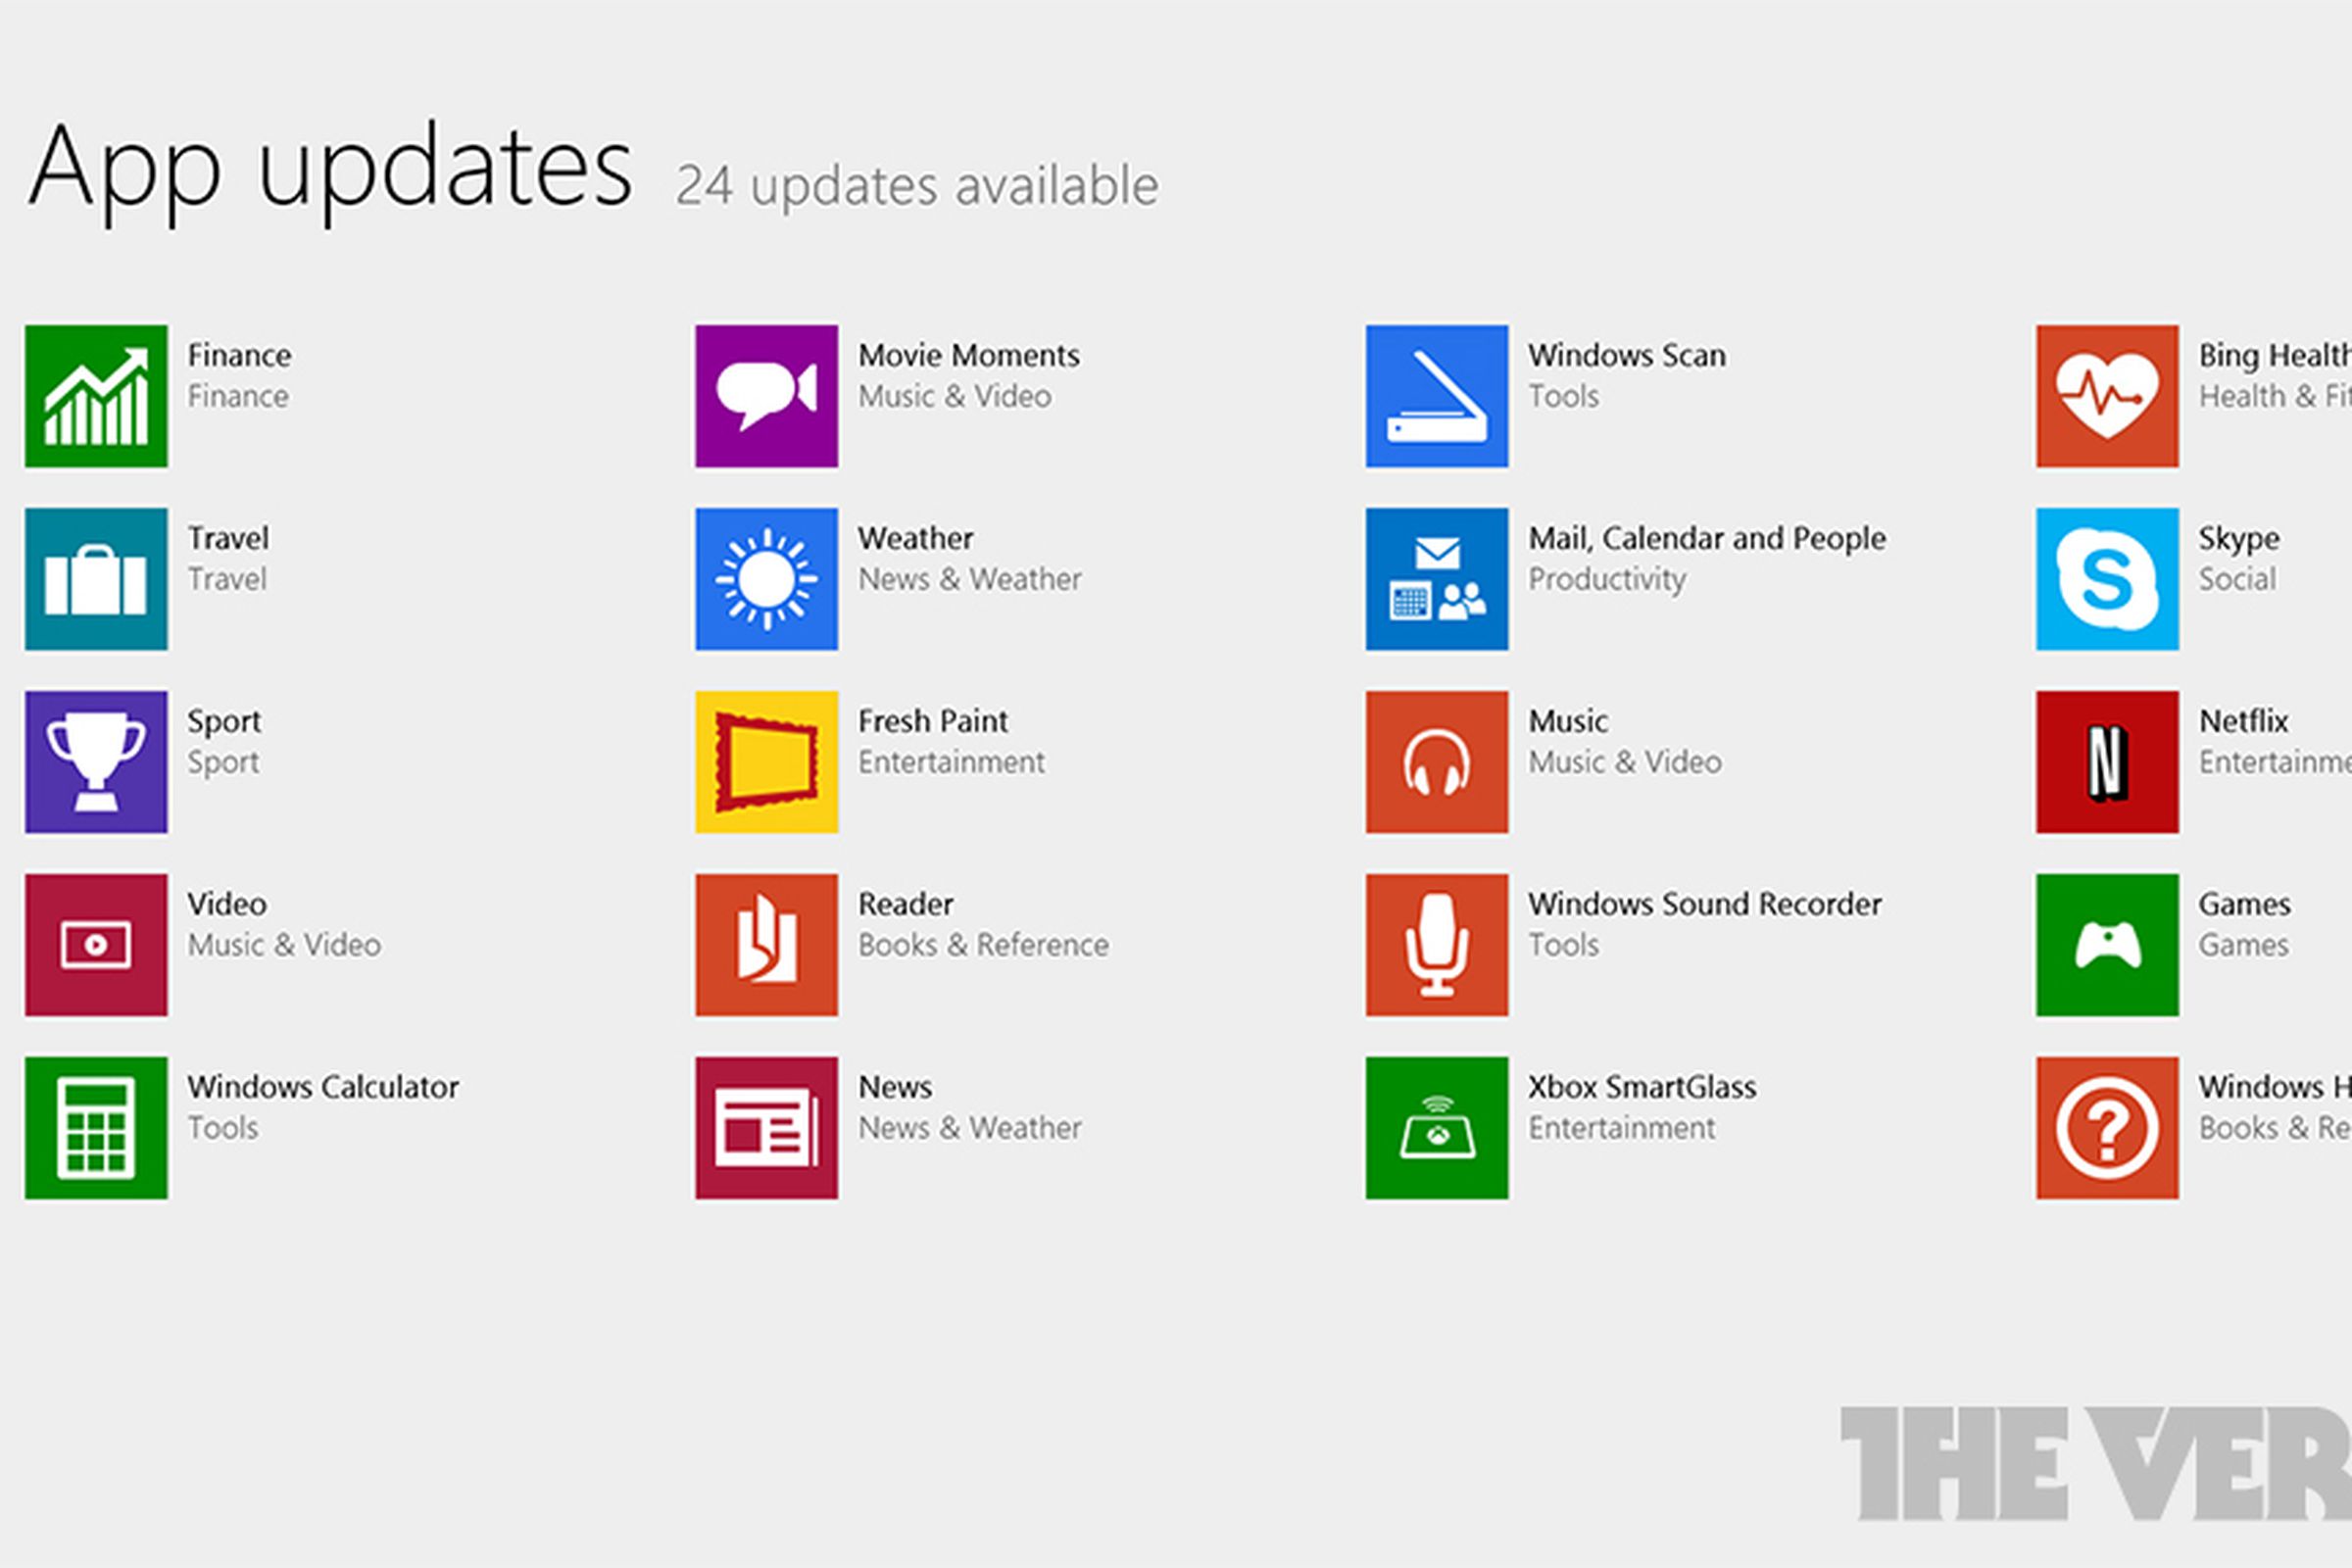 Windows 8.1 updates